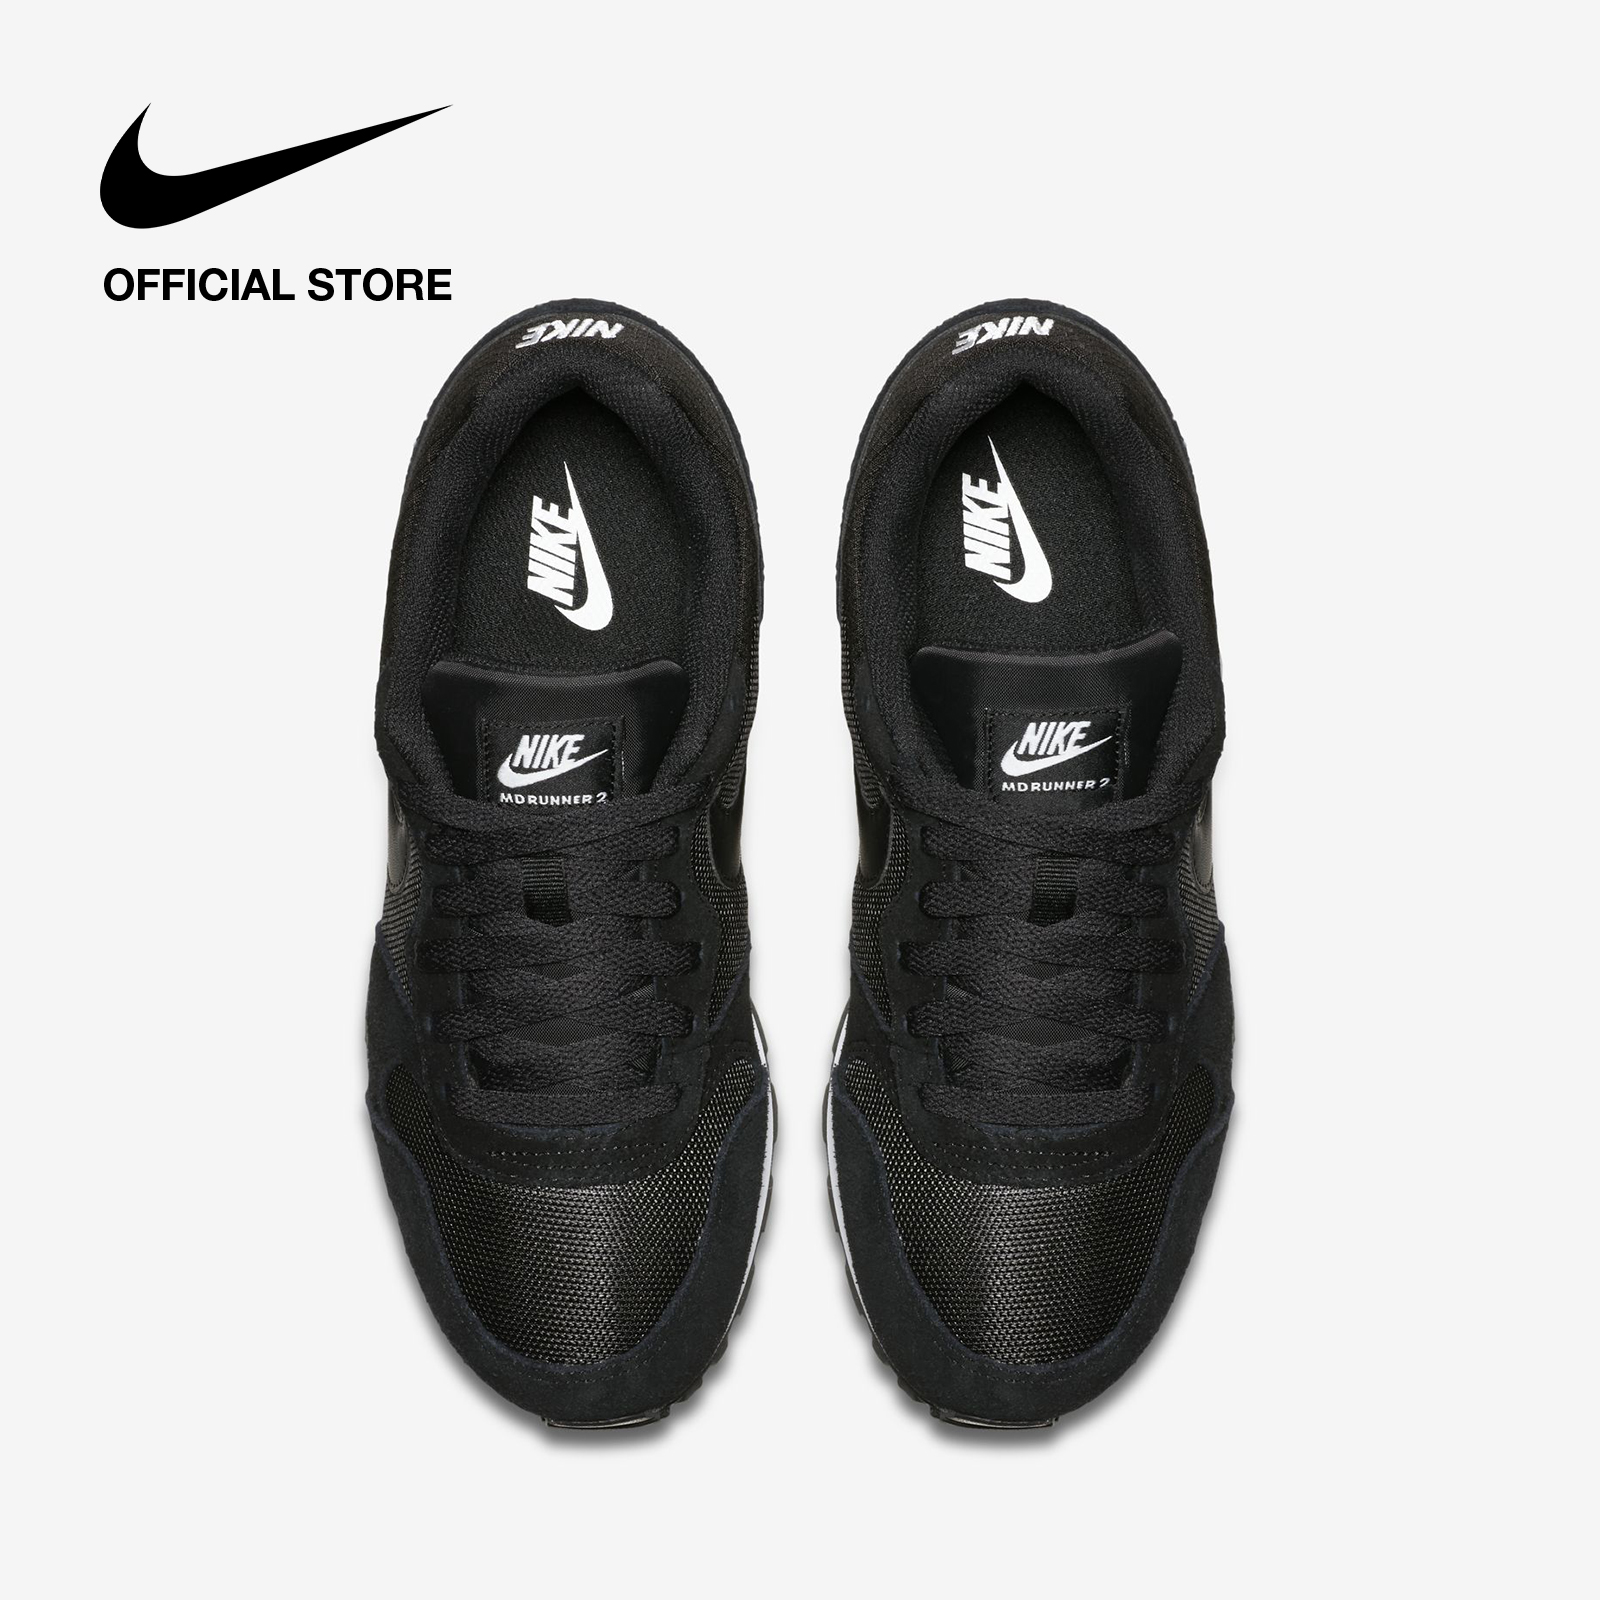 Nike Women's MD Runner 2 Shoes - Black รองเท้าผู้หญิง Nike MD Runner 2 - สีดำ